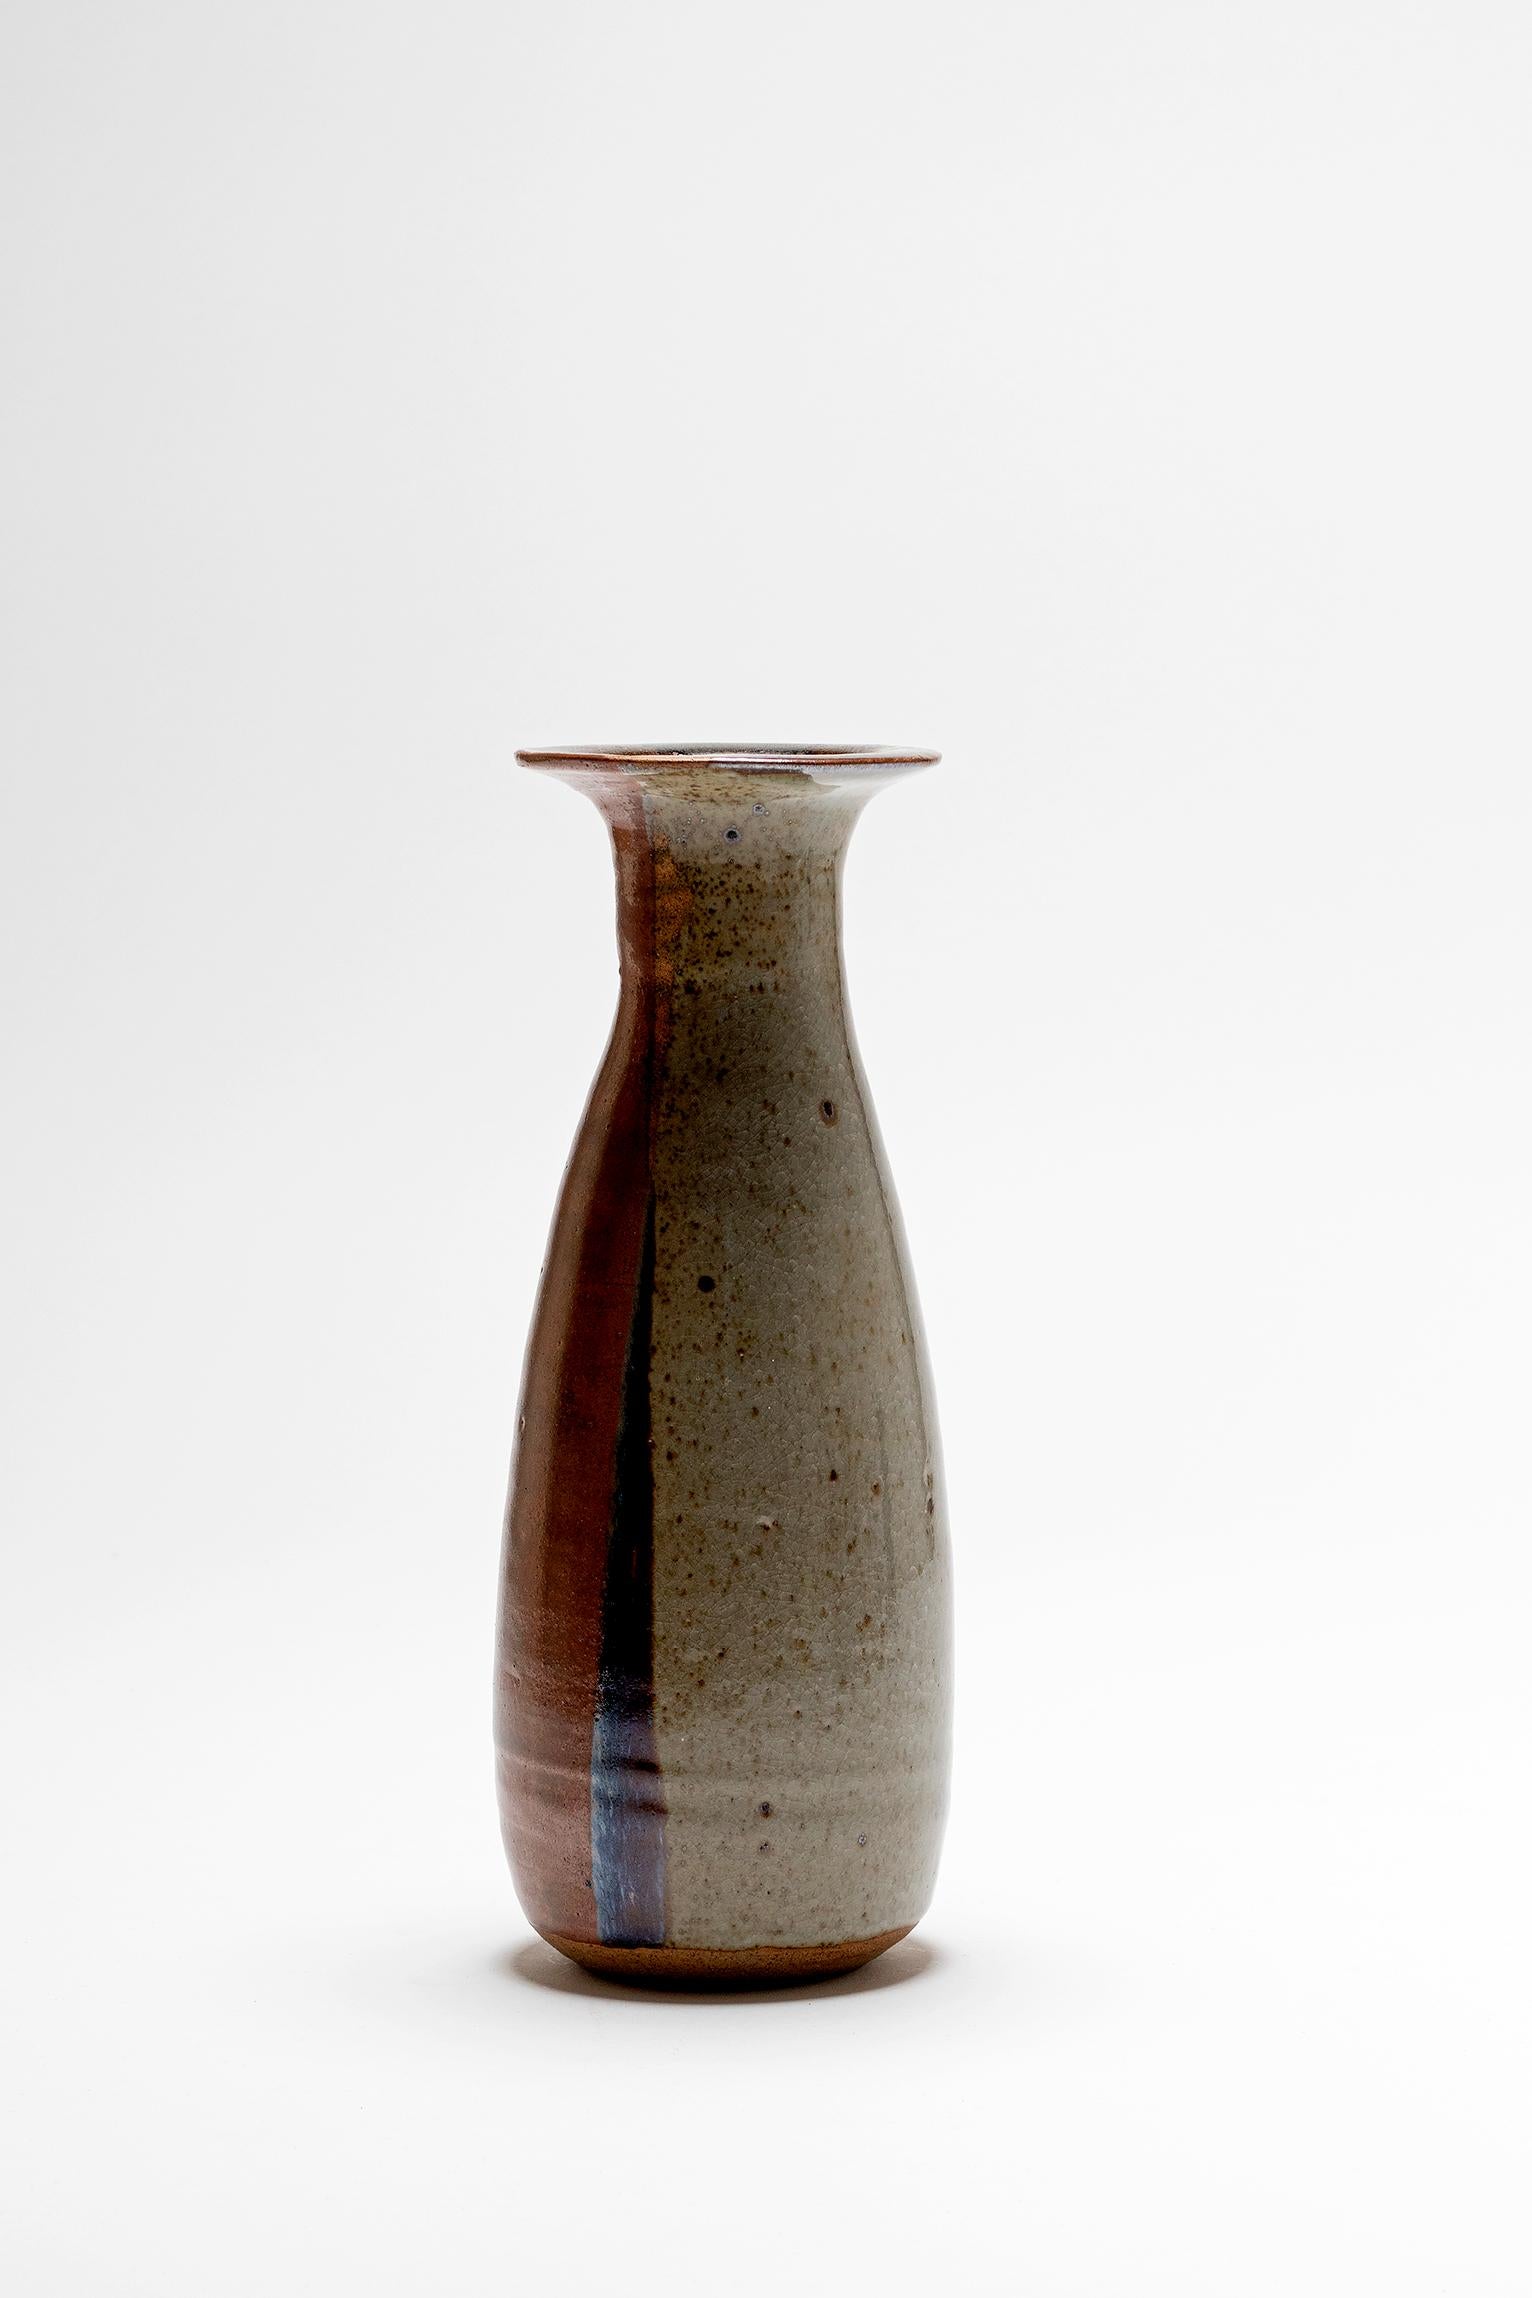 A stoneware vase, dated 90, signature undeciphered. 
France, 1990.